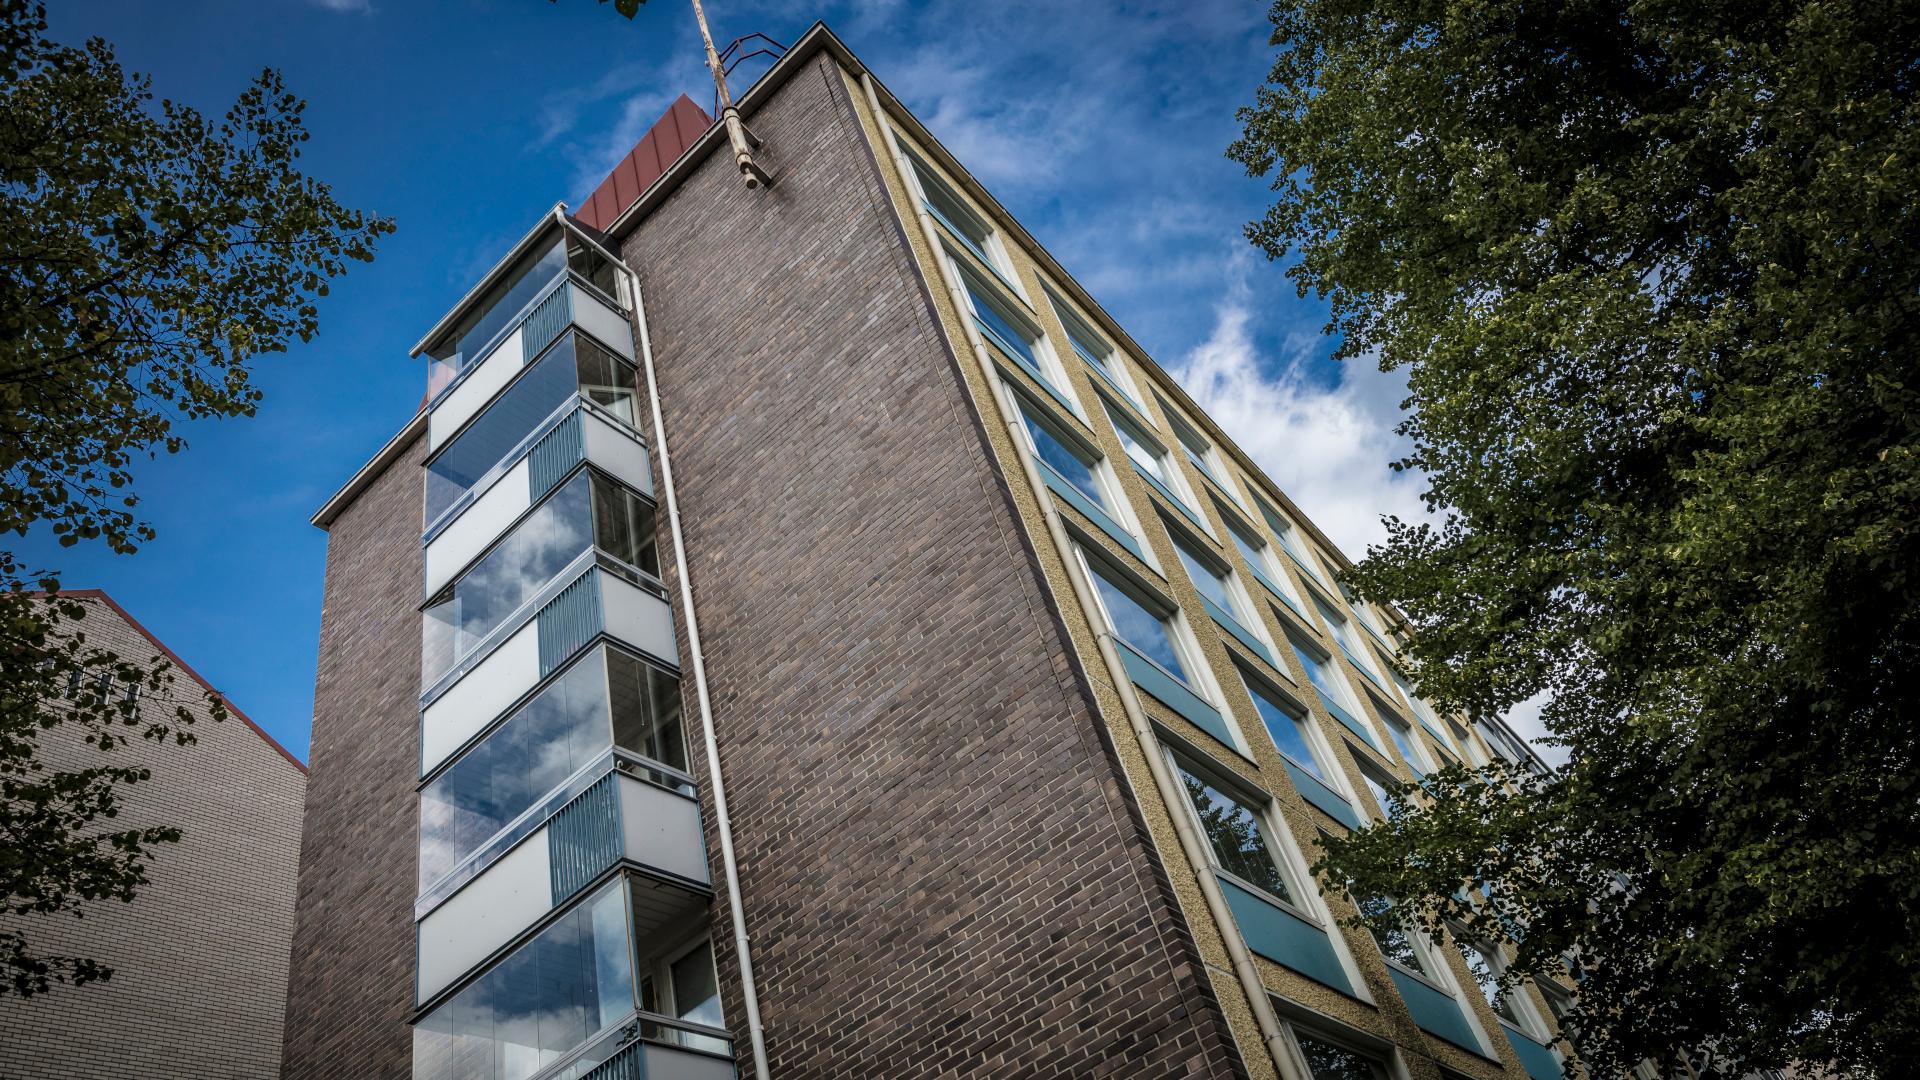 Tampereella sijaitseva 22 huoneiston kerrostalo valmistui vuonna 1963.